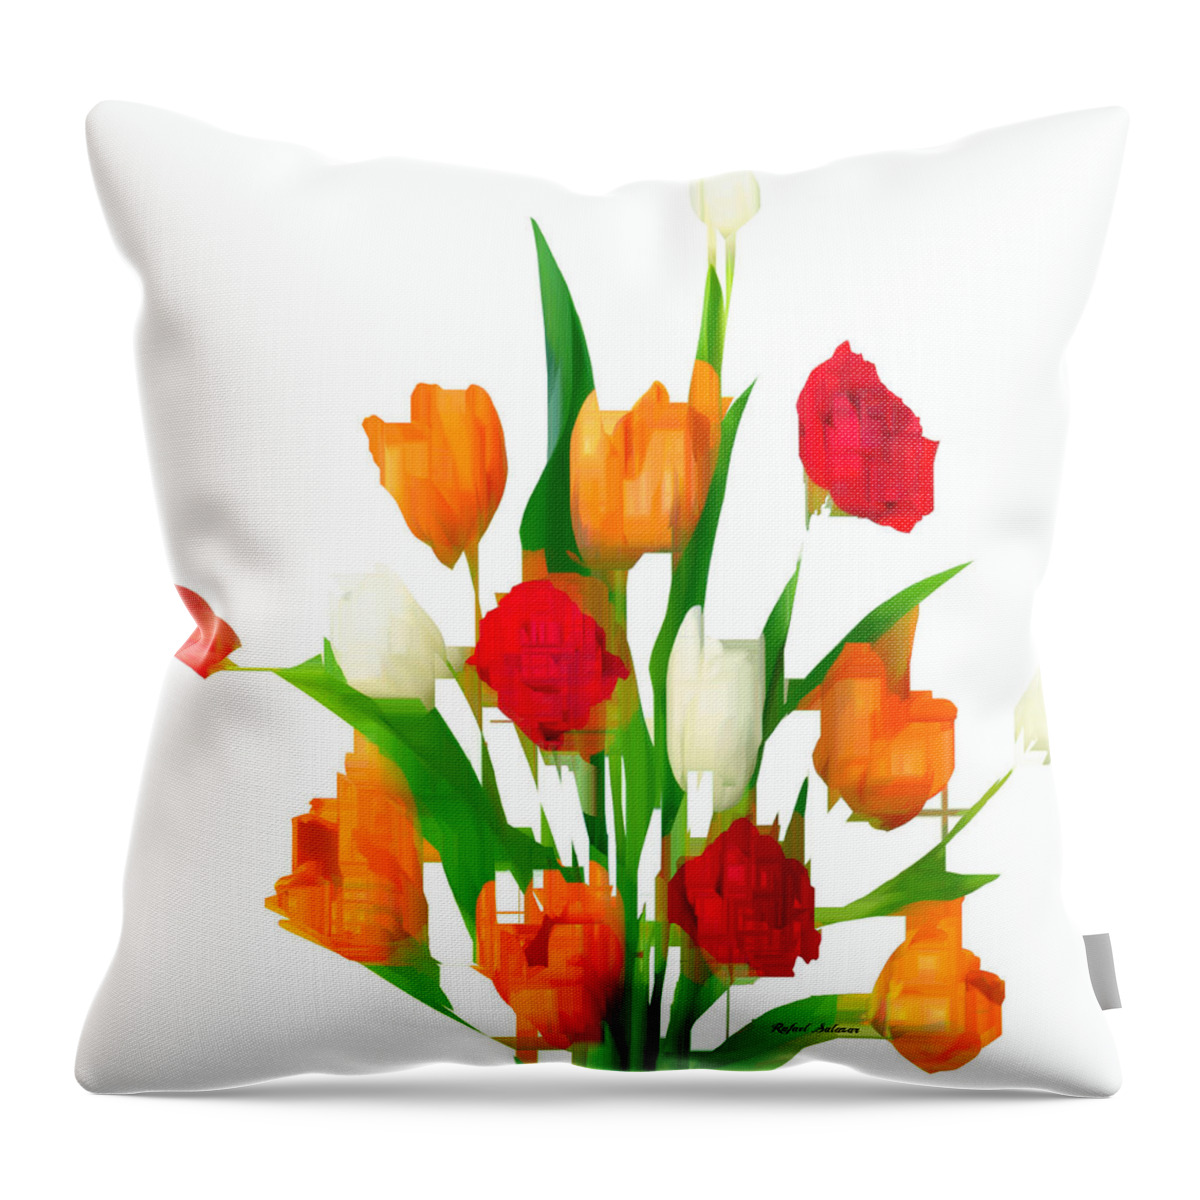 Flower Throw Pillow featuring the digital art You Got Flowers by Rafael Salazar